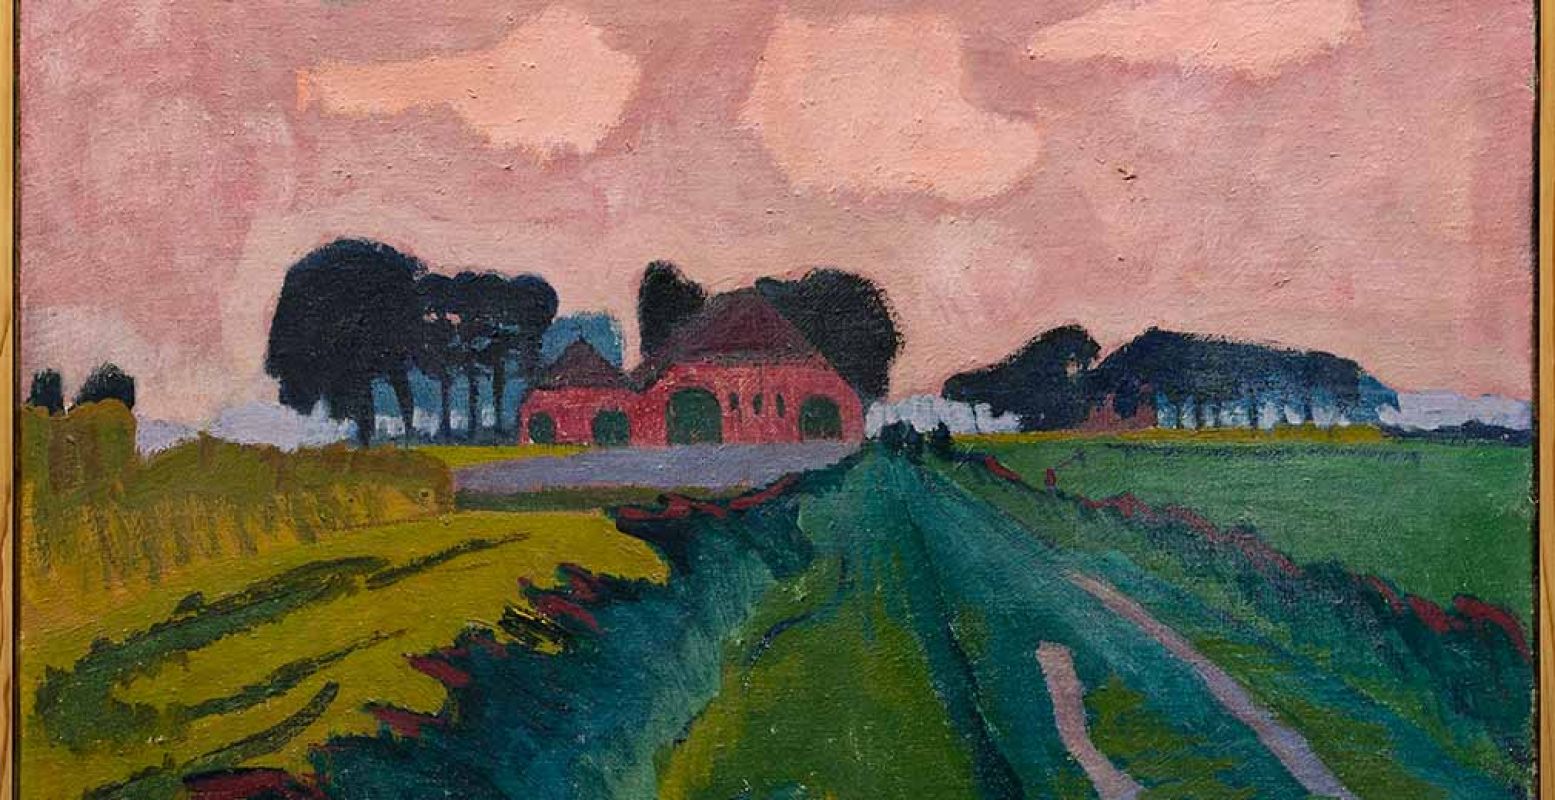 Jan Altink, De rode boerderij, 1926, was/olieverf op canvas, 60,5 x 70, 5 cm, Collectie Stichting De Ploeg, bruikleen Groninger Museum. Foto: Groninger Museum.